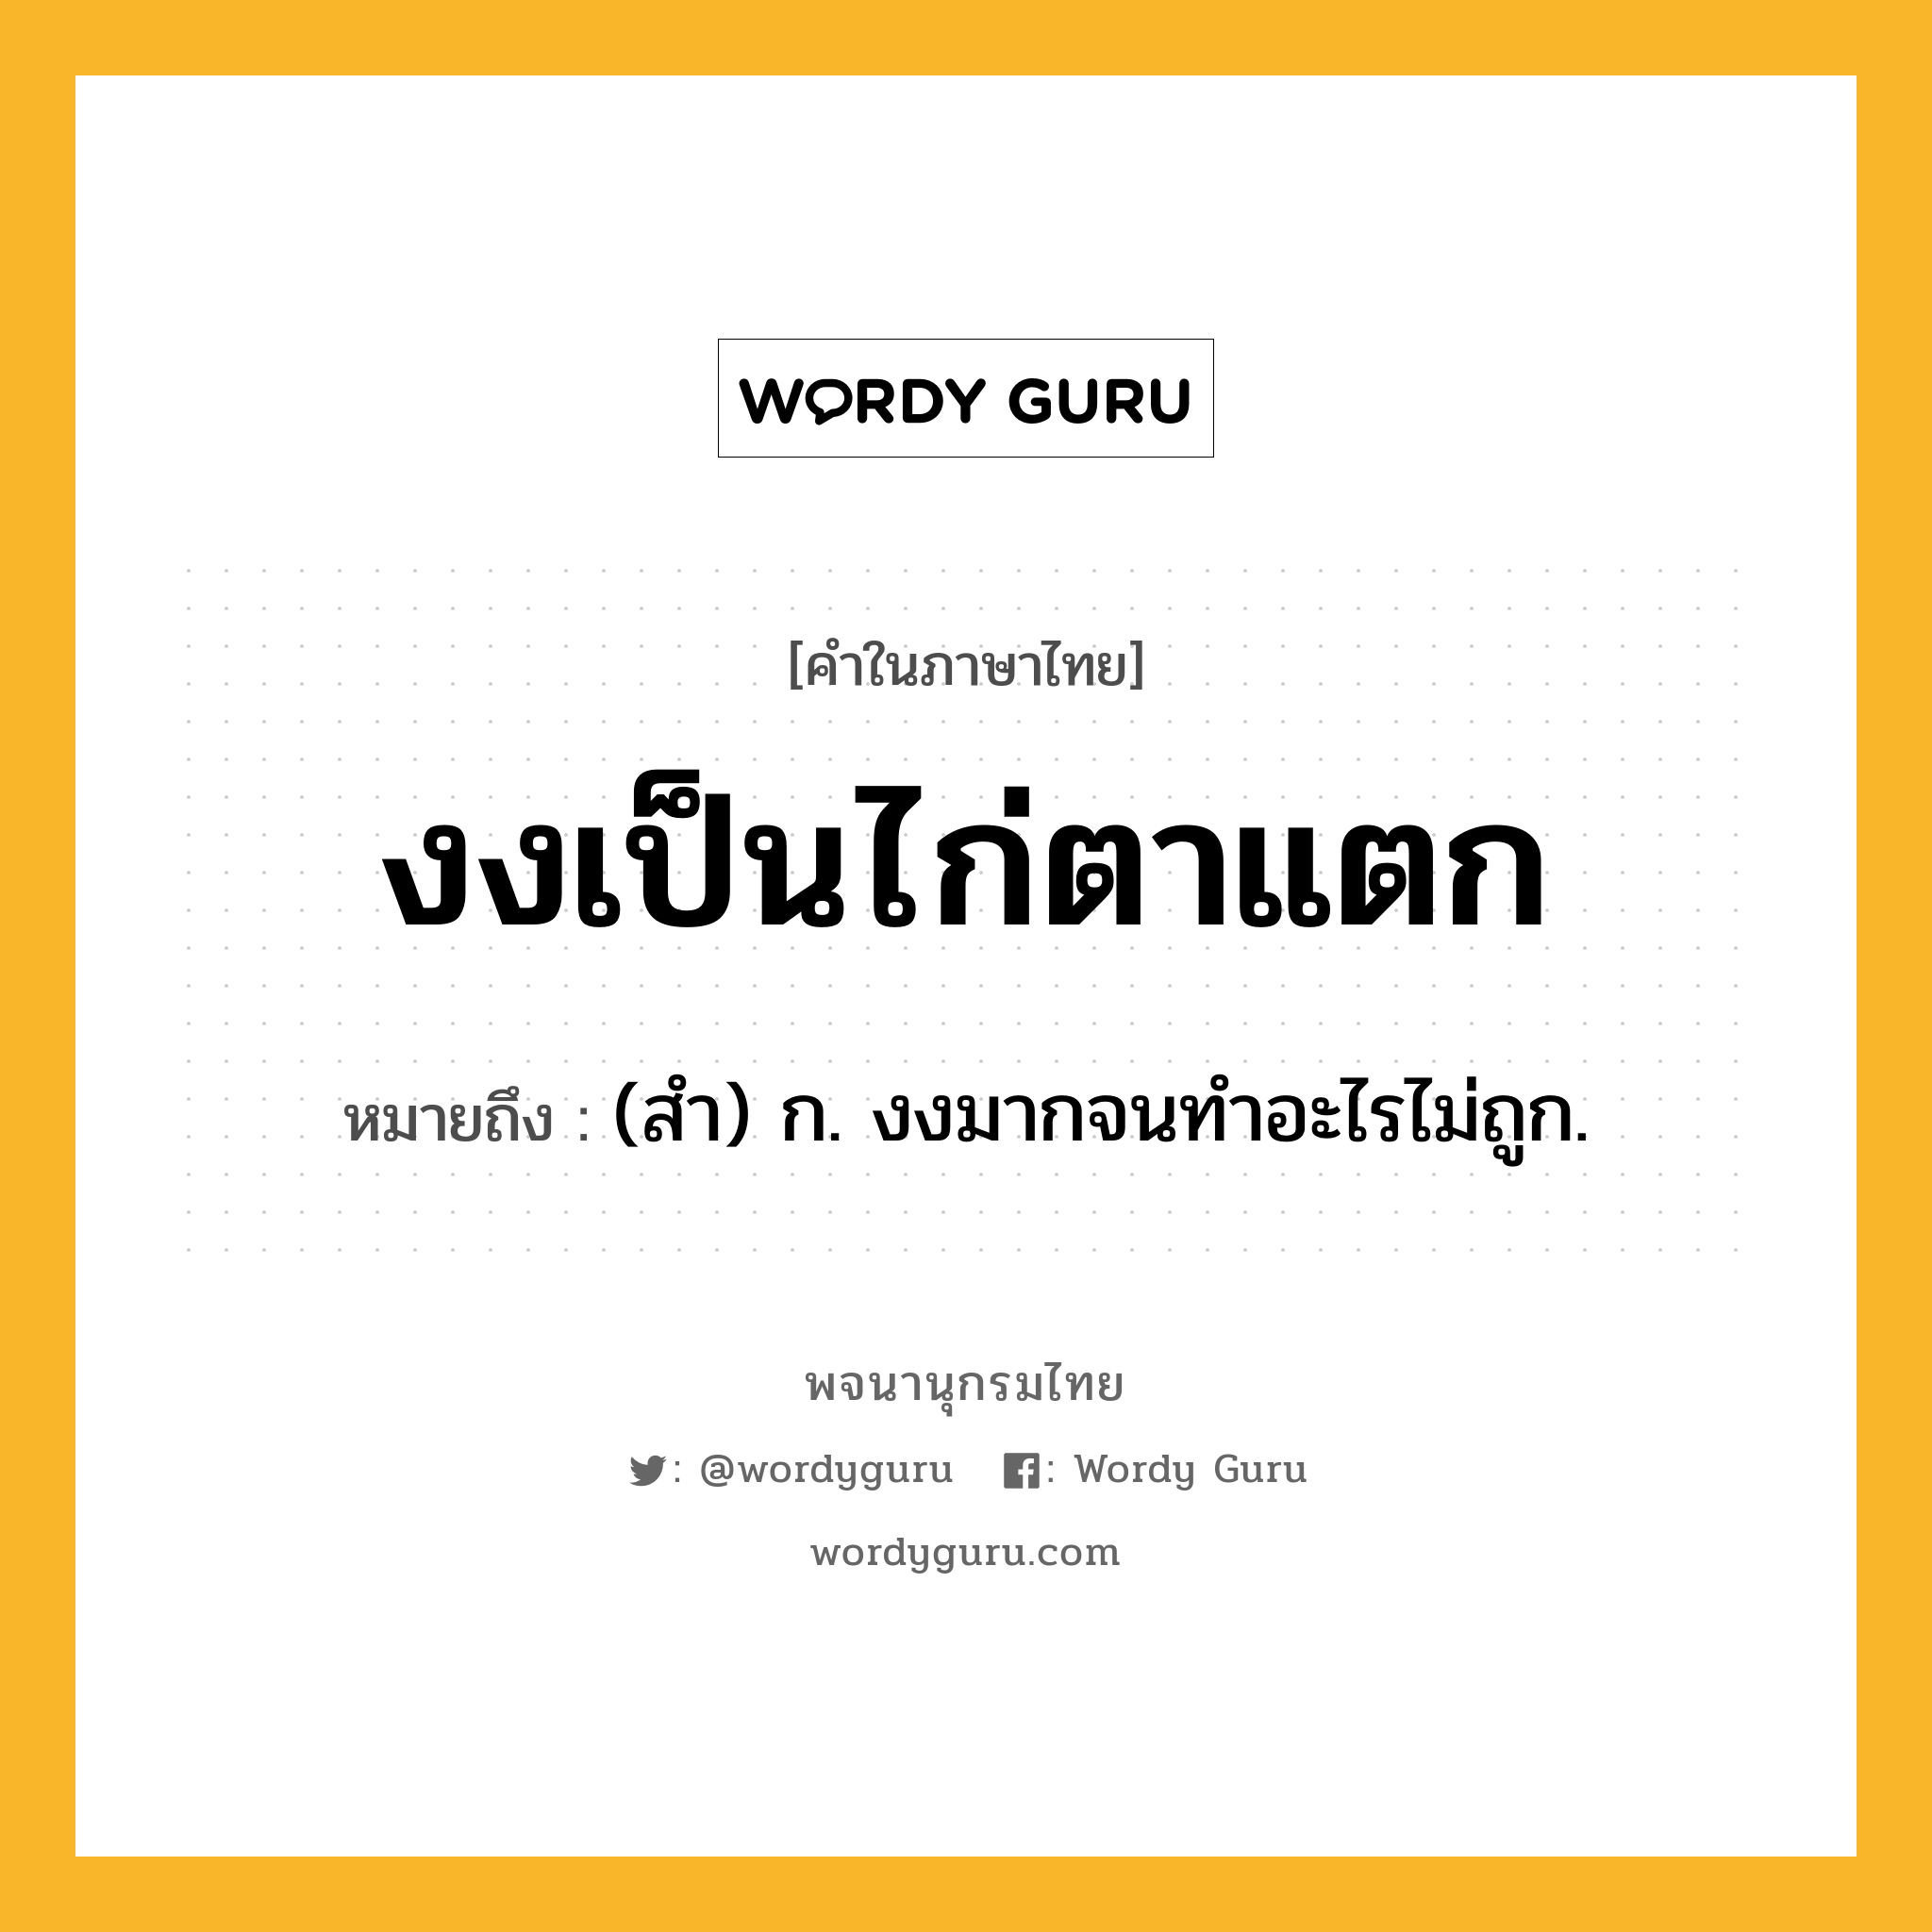 งงเป็นไก่ตาแตก หมายถึงอะไร?, คำในภาษาไทย งงเป็นไก่ตาแตก หมายถึง (สำ) ก. งงมากจนทำอะไรไม่ถูก.